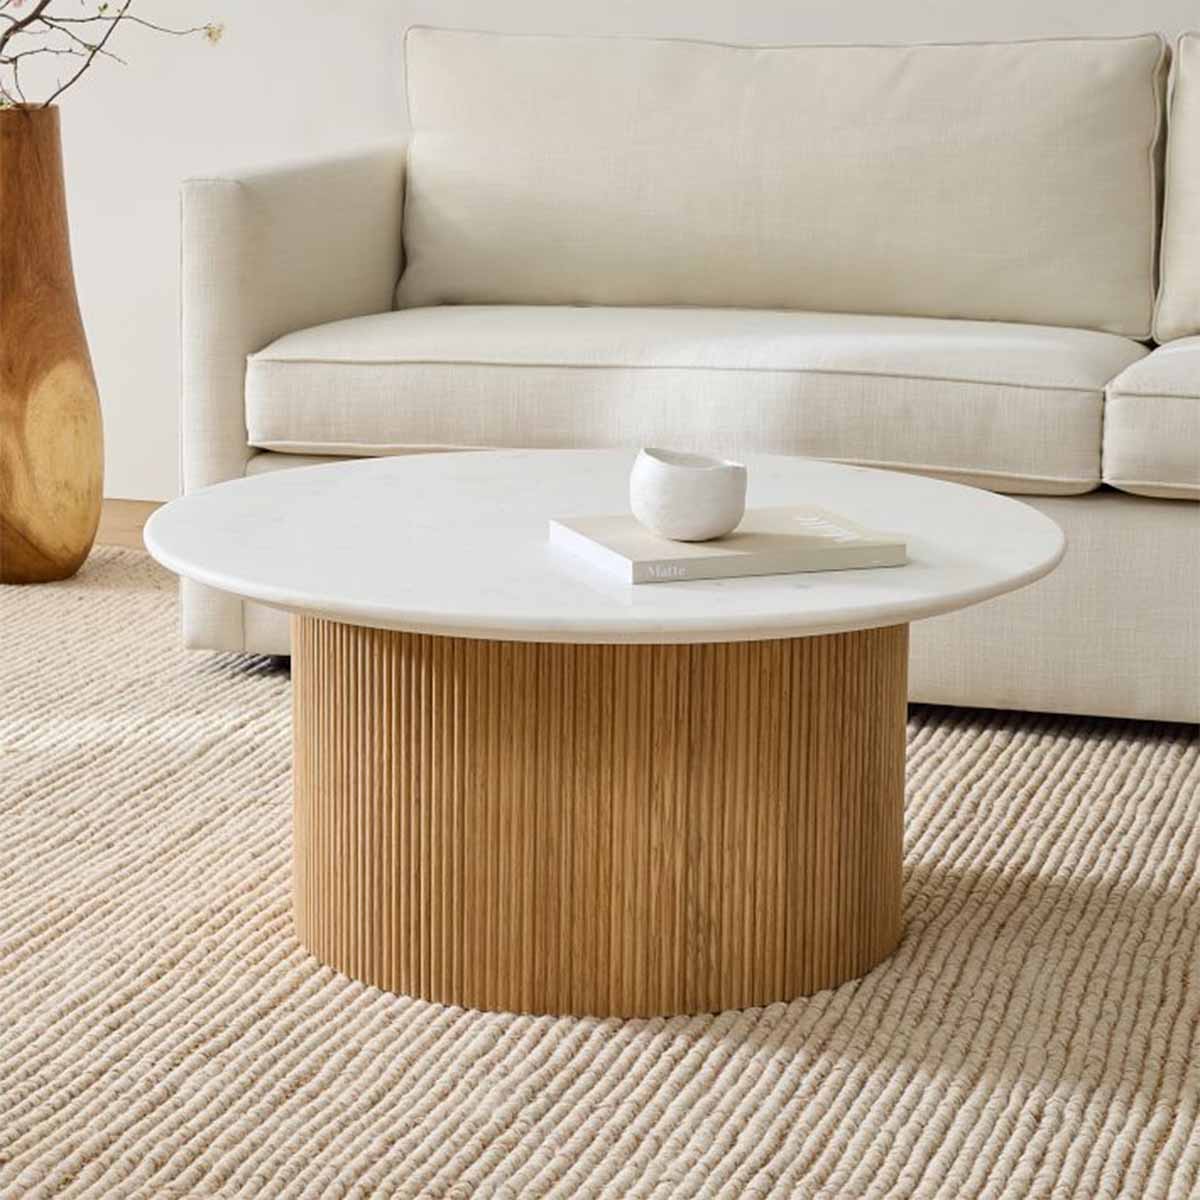 میز جلو مبلی جدید دایره ای چوبی سنگی با طرح پایه فلوتی